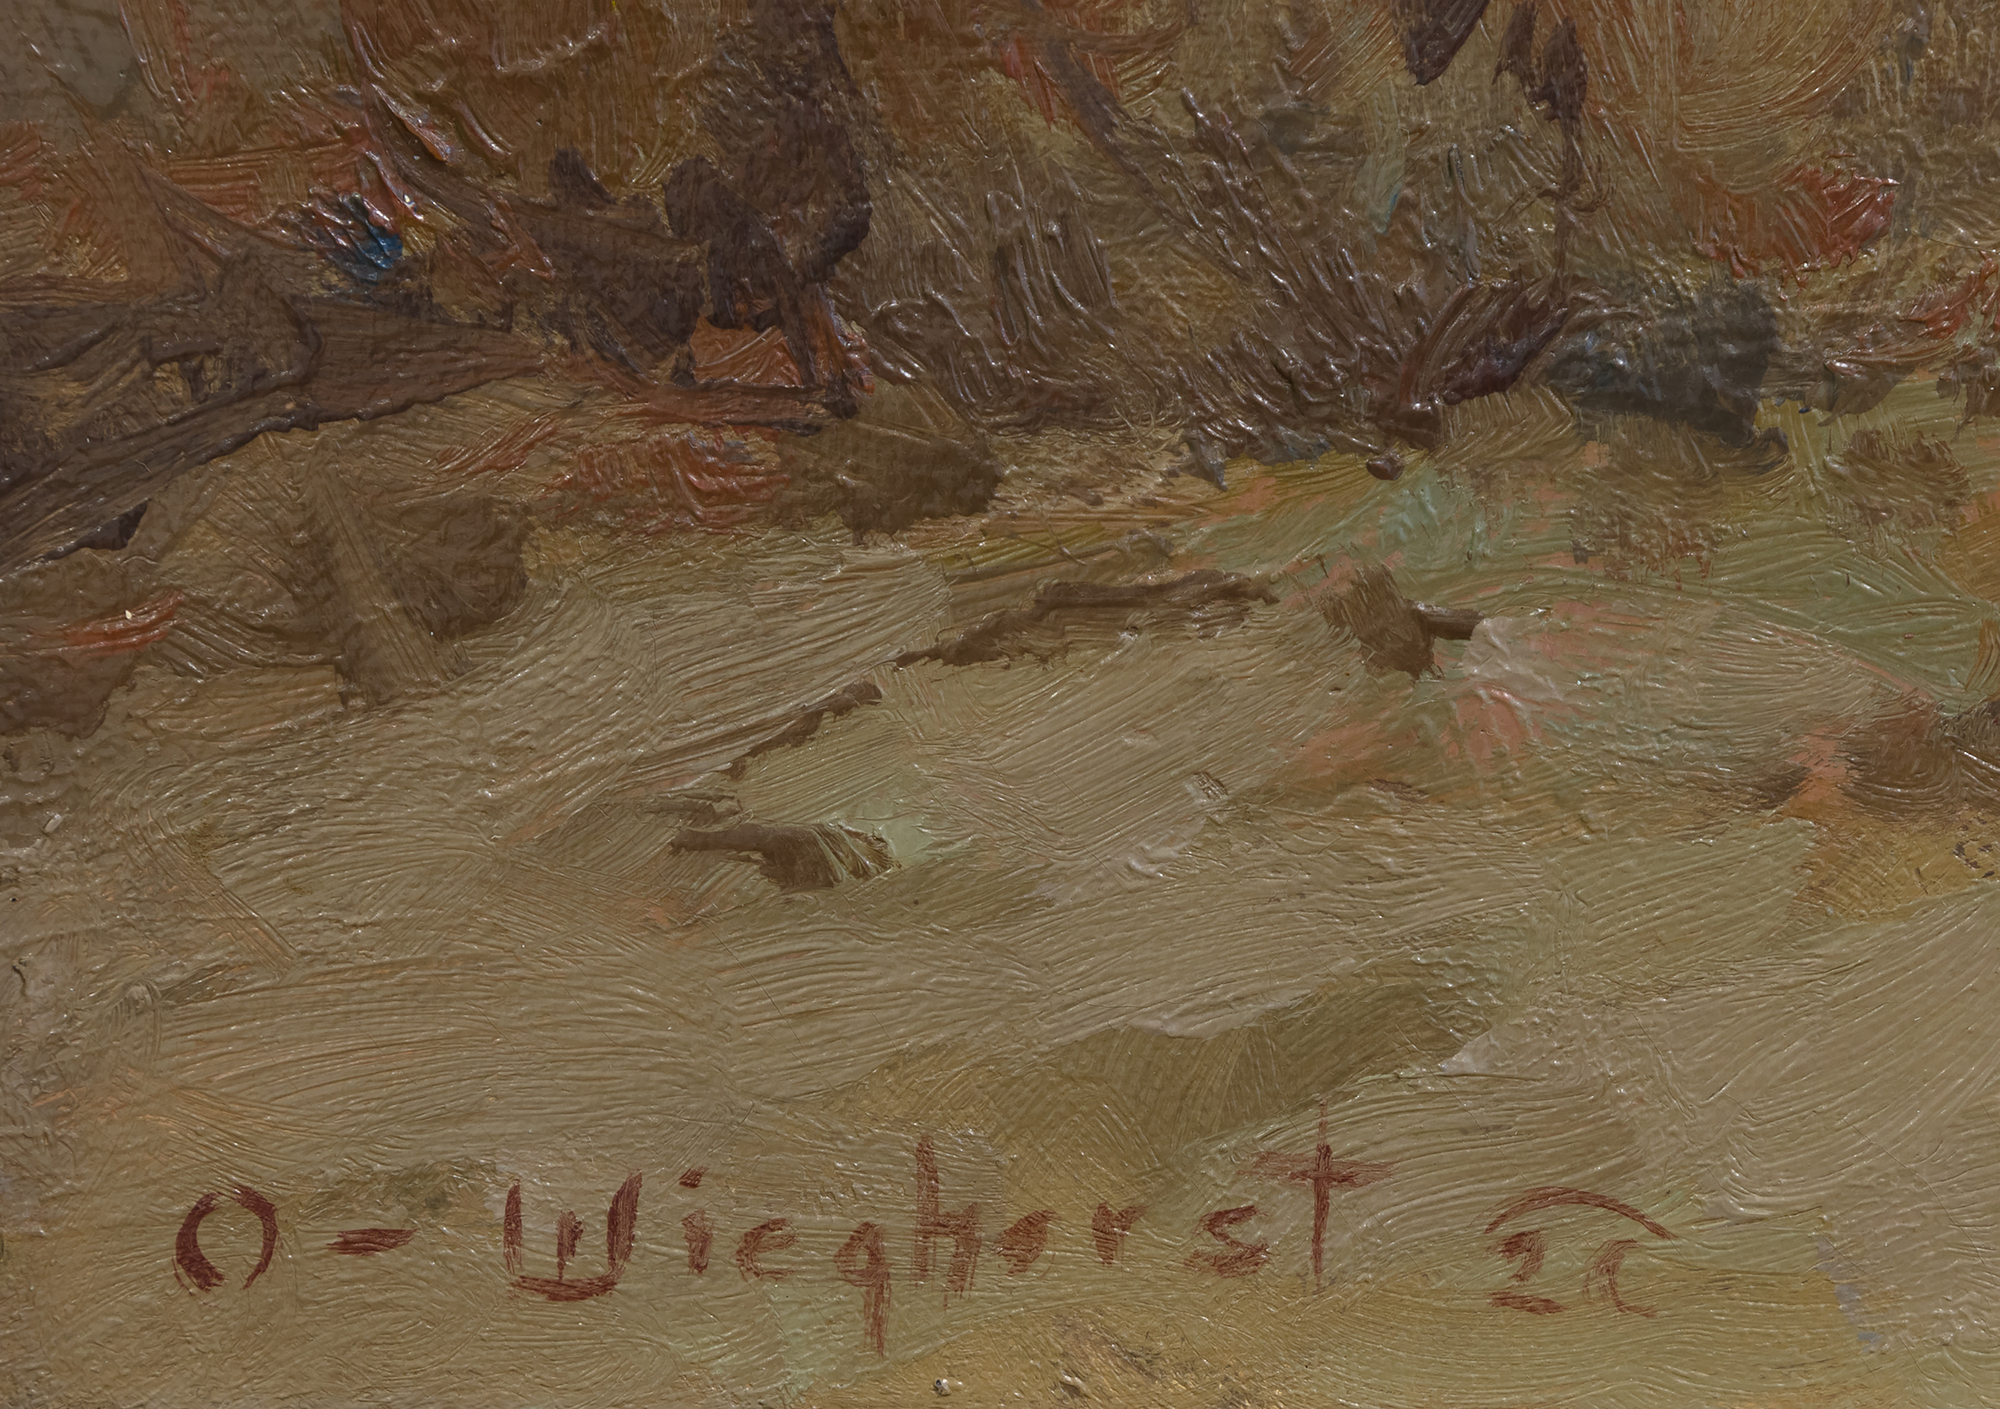 OLAF WIEGHORST - Apaches - óleo sobre lienzo - 20 x 24 in.